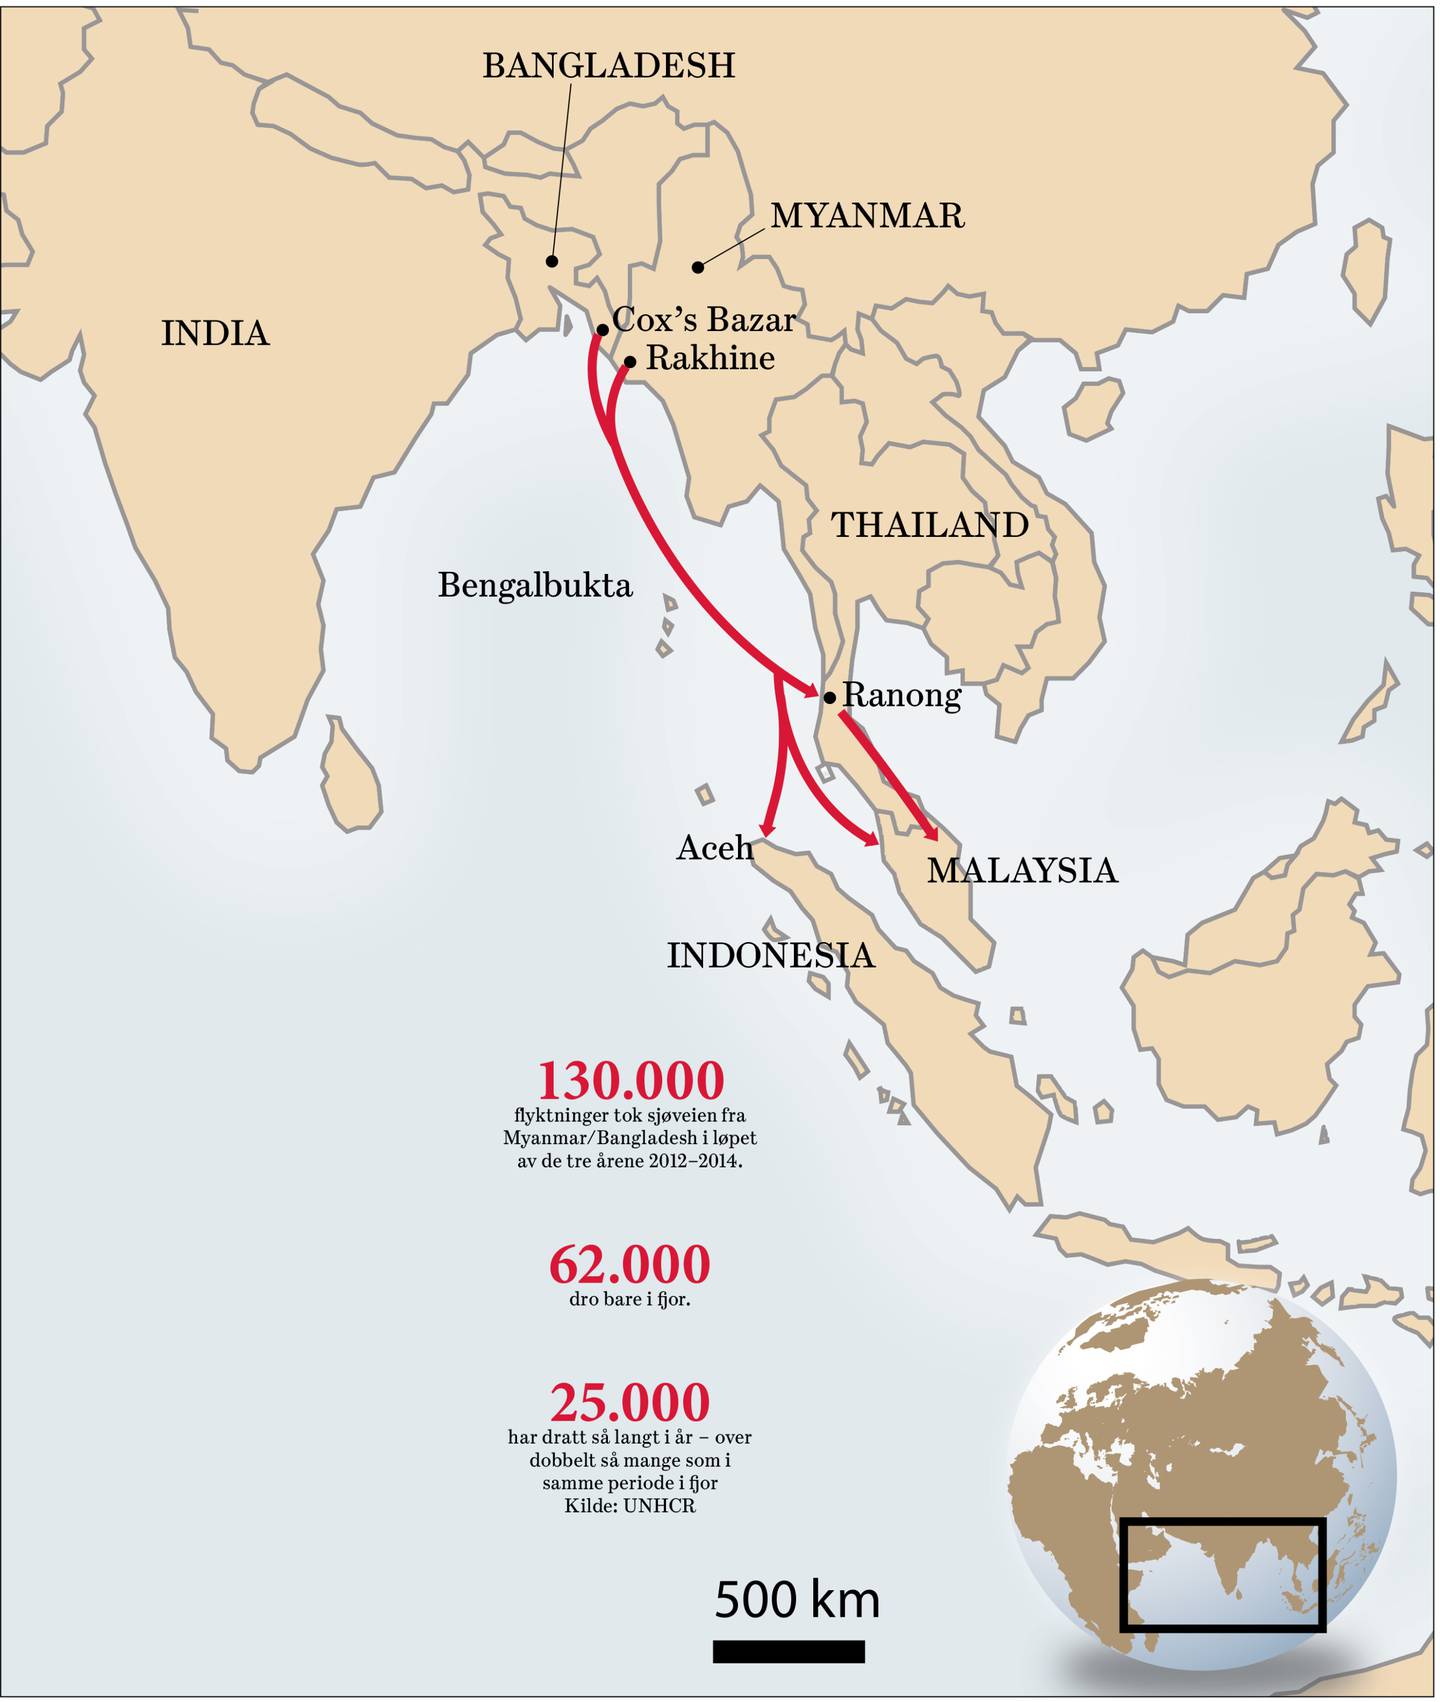 Mange flyktninger er fra den undertrykkede rohingya-minoriteten i grenseområdet mellom Myanmar og Bangladesh. Flyktningstrømmen har økt de siste månedene. I tillegg har thailandske myndigheter slått ned på menneskesmuglere som tidligere har tatt flyktningene til leire i Sør-Thailand. Det har ført til at smuglerne overlater flyktningene til seg selv på havet. GRAFIKK: DAGSAVISEN. KILDE: BULLS